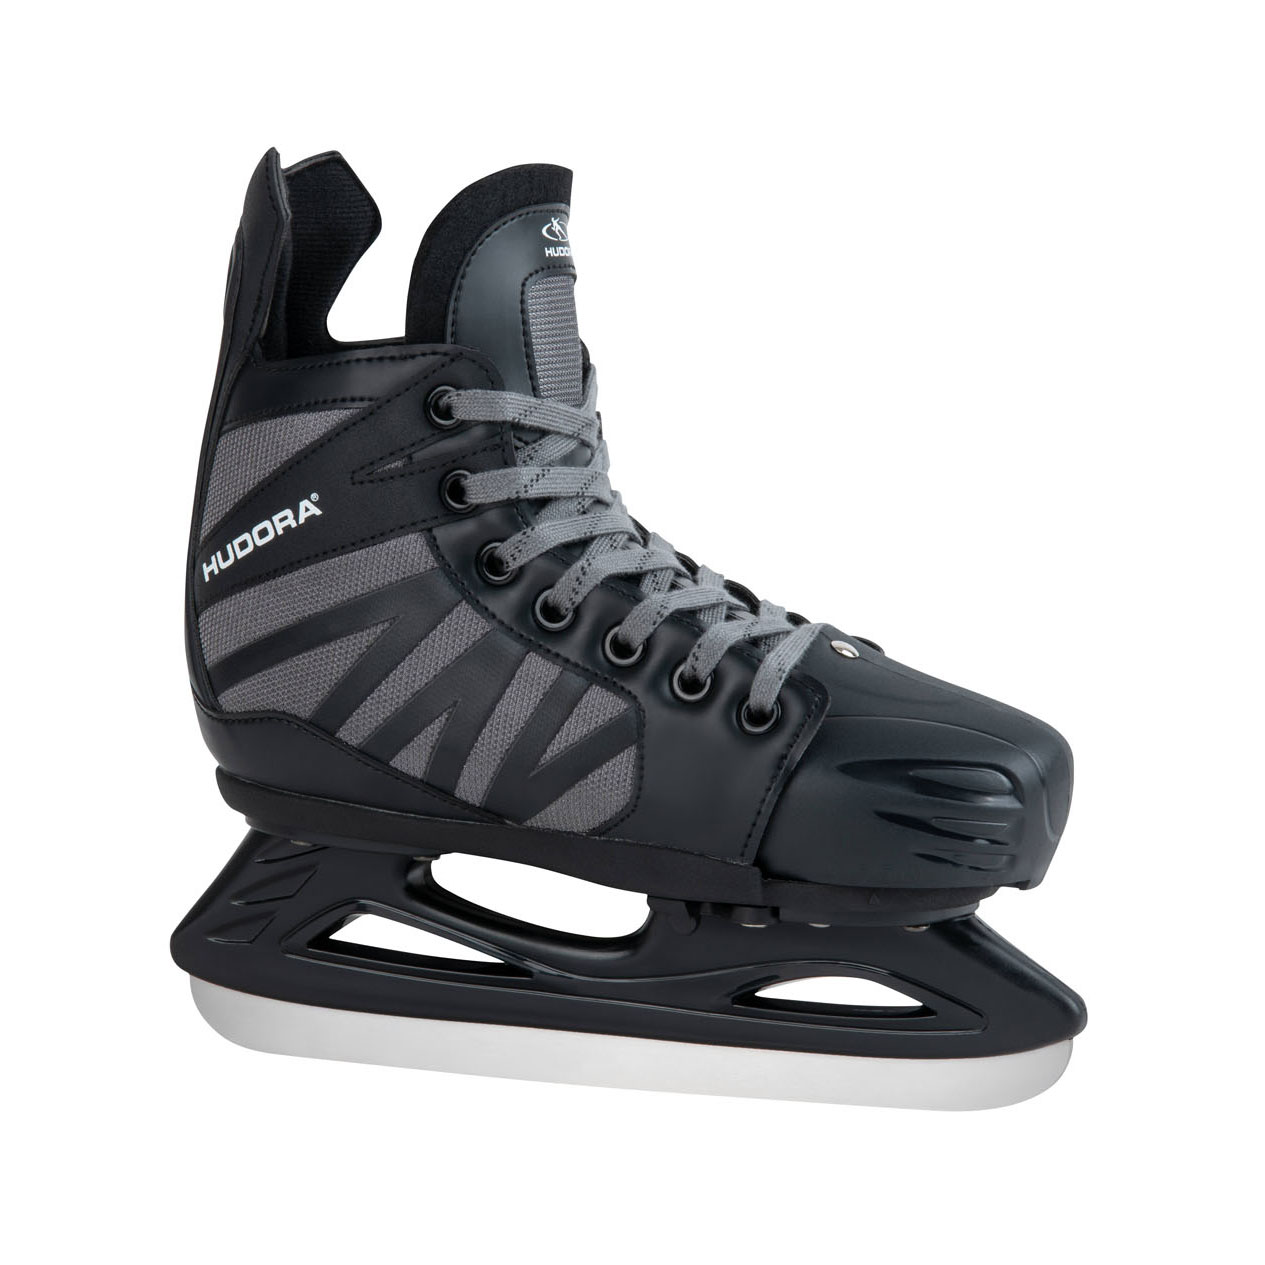 HUDORA Power Play Ice Hockey Skates Black, Size | Thimble Toys